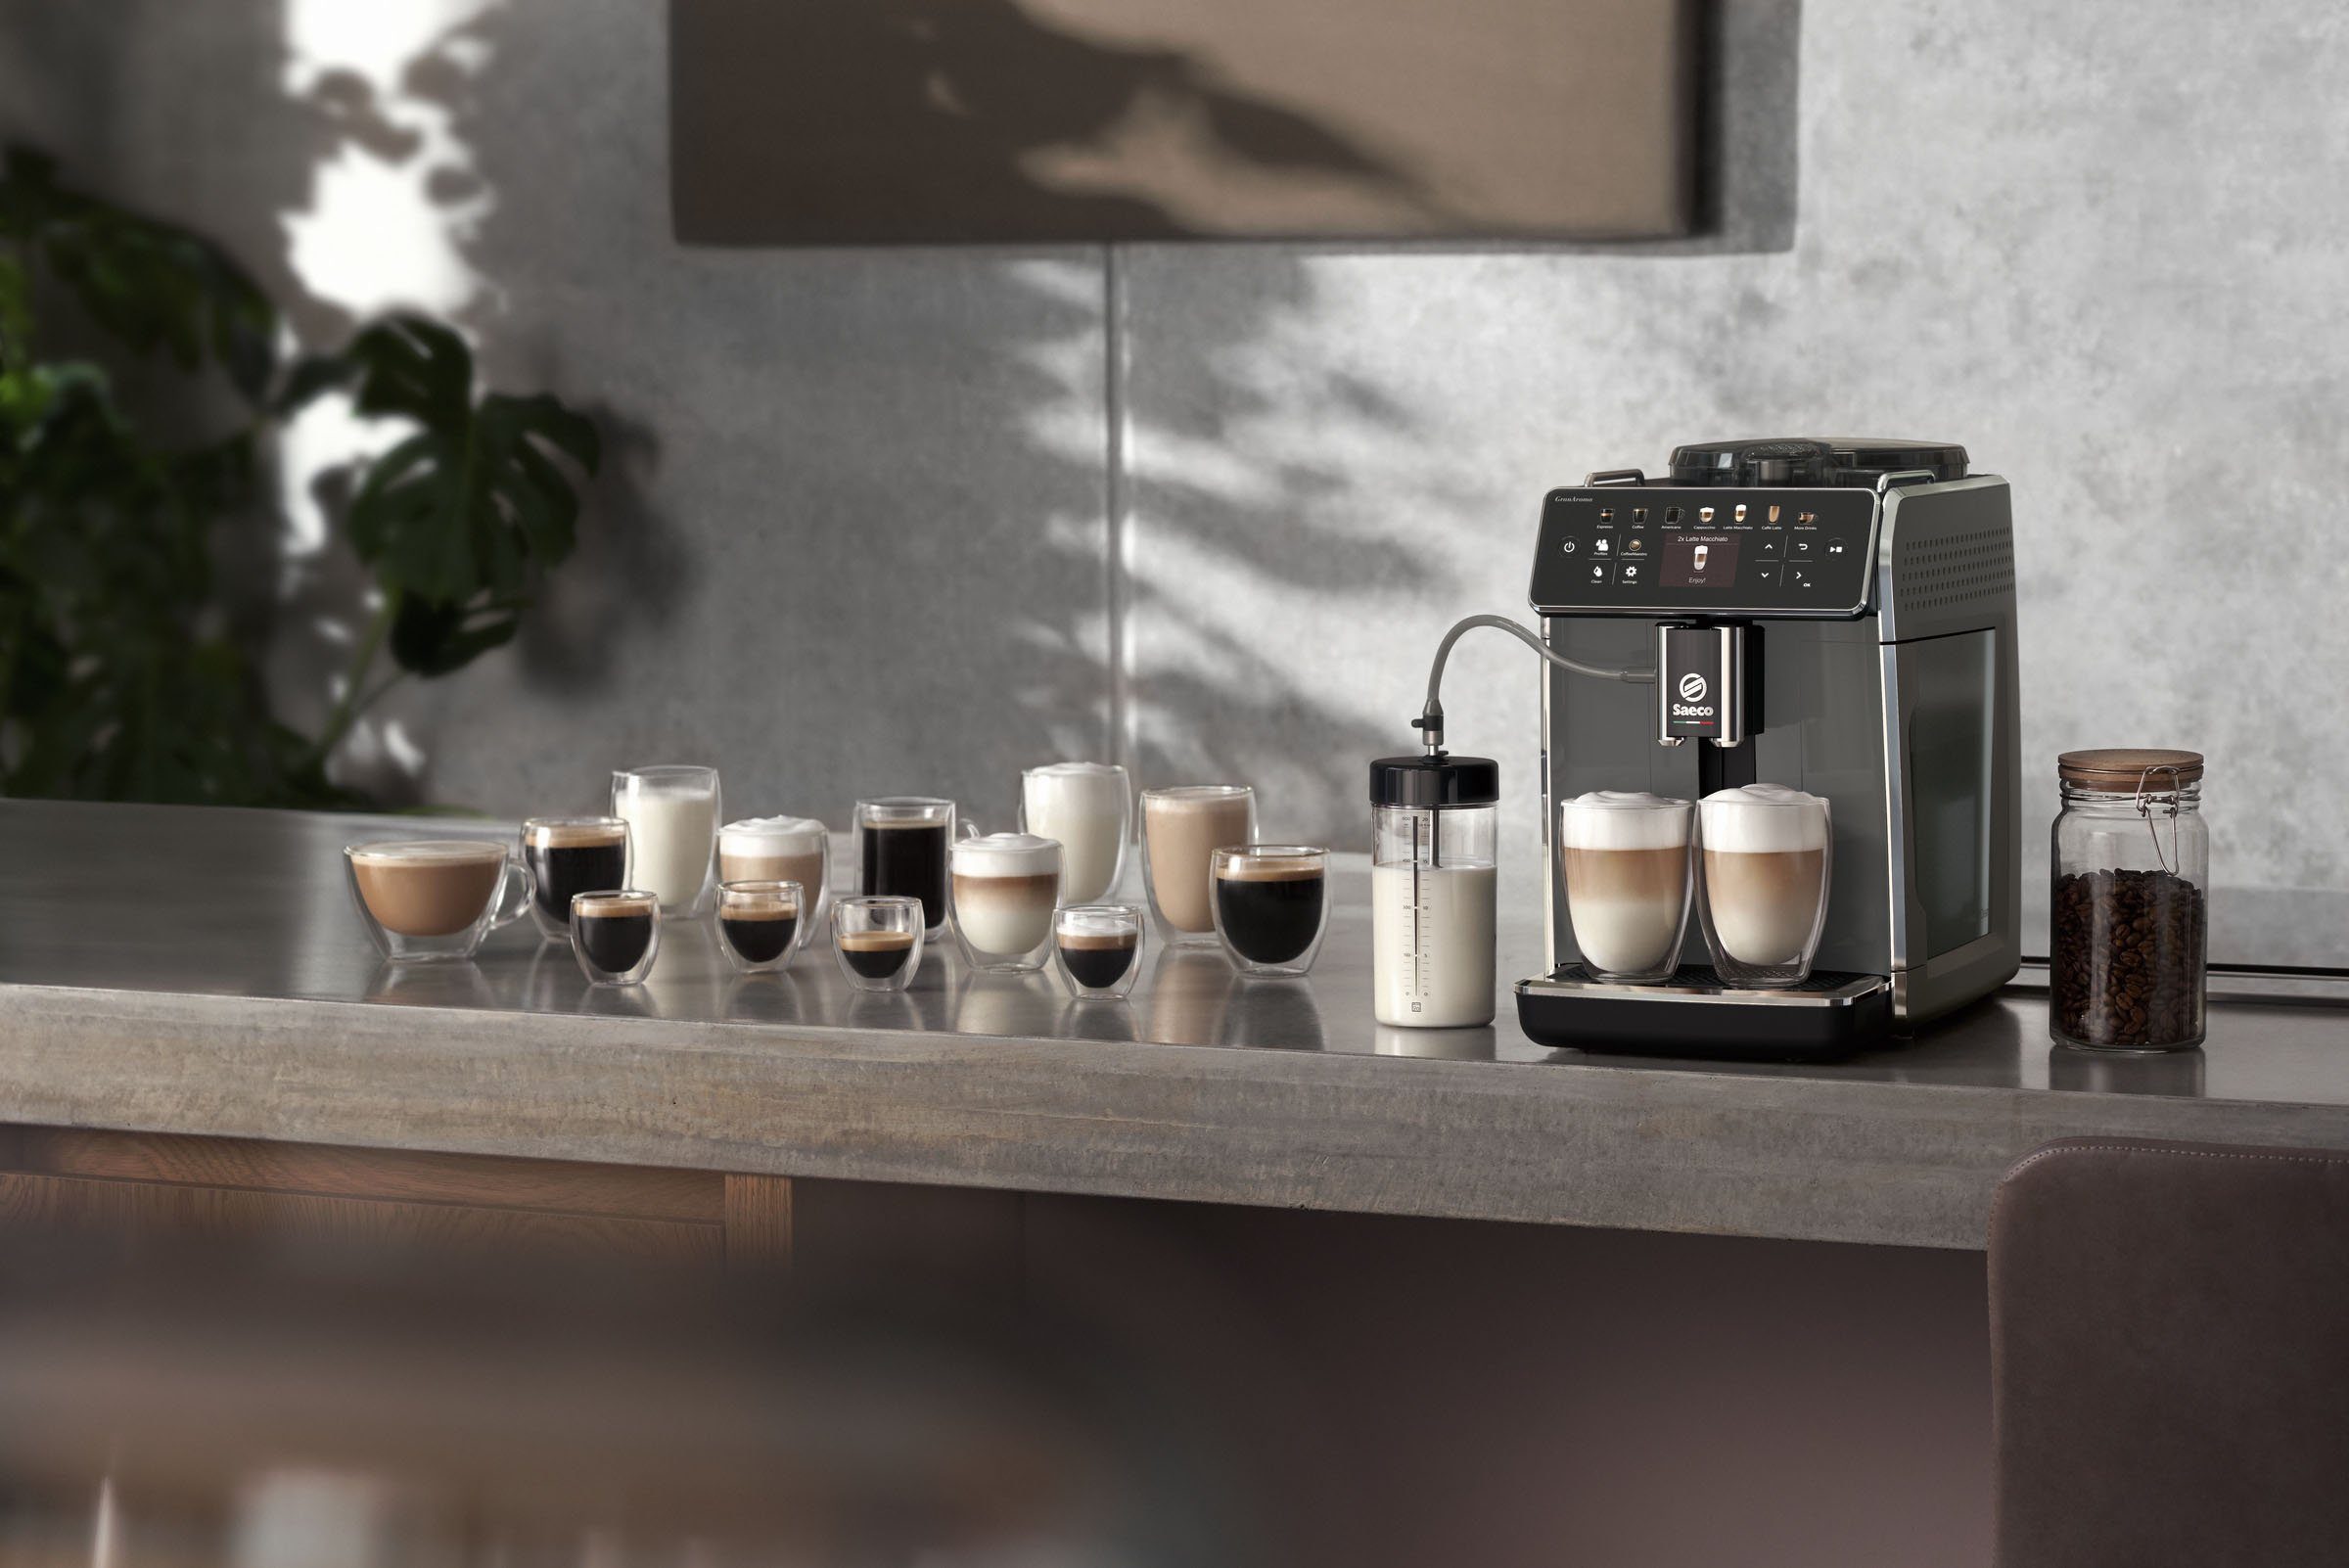 Saeco Kaffeevollautomat GranAroma SM6580/50, 14 4 Display TFT Kaffeespezialitäten, Benutzerprofilen und mit für